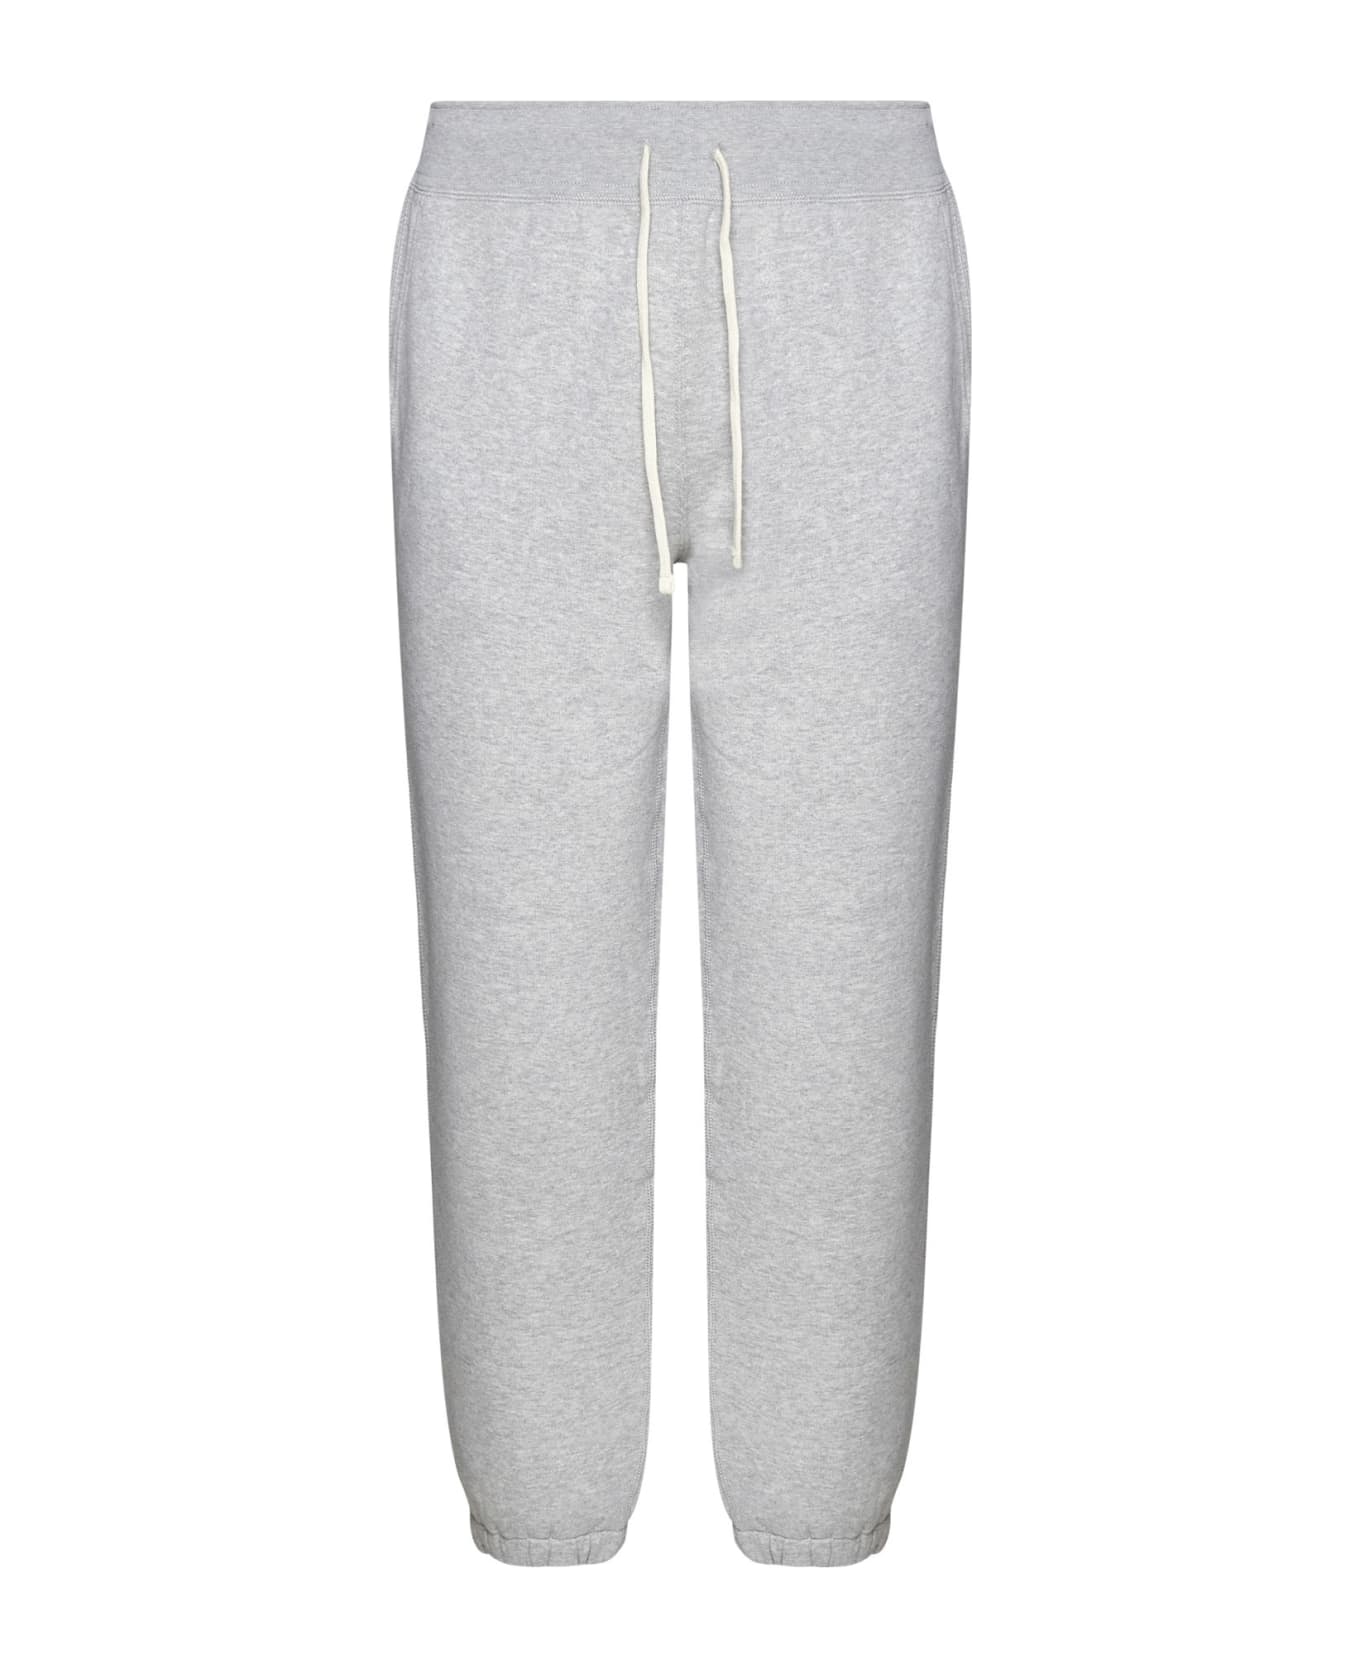 Polo Ralph Lauren Grey Cotton Blend Sporty Pants - Grey ボトムス